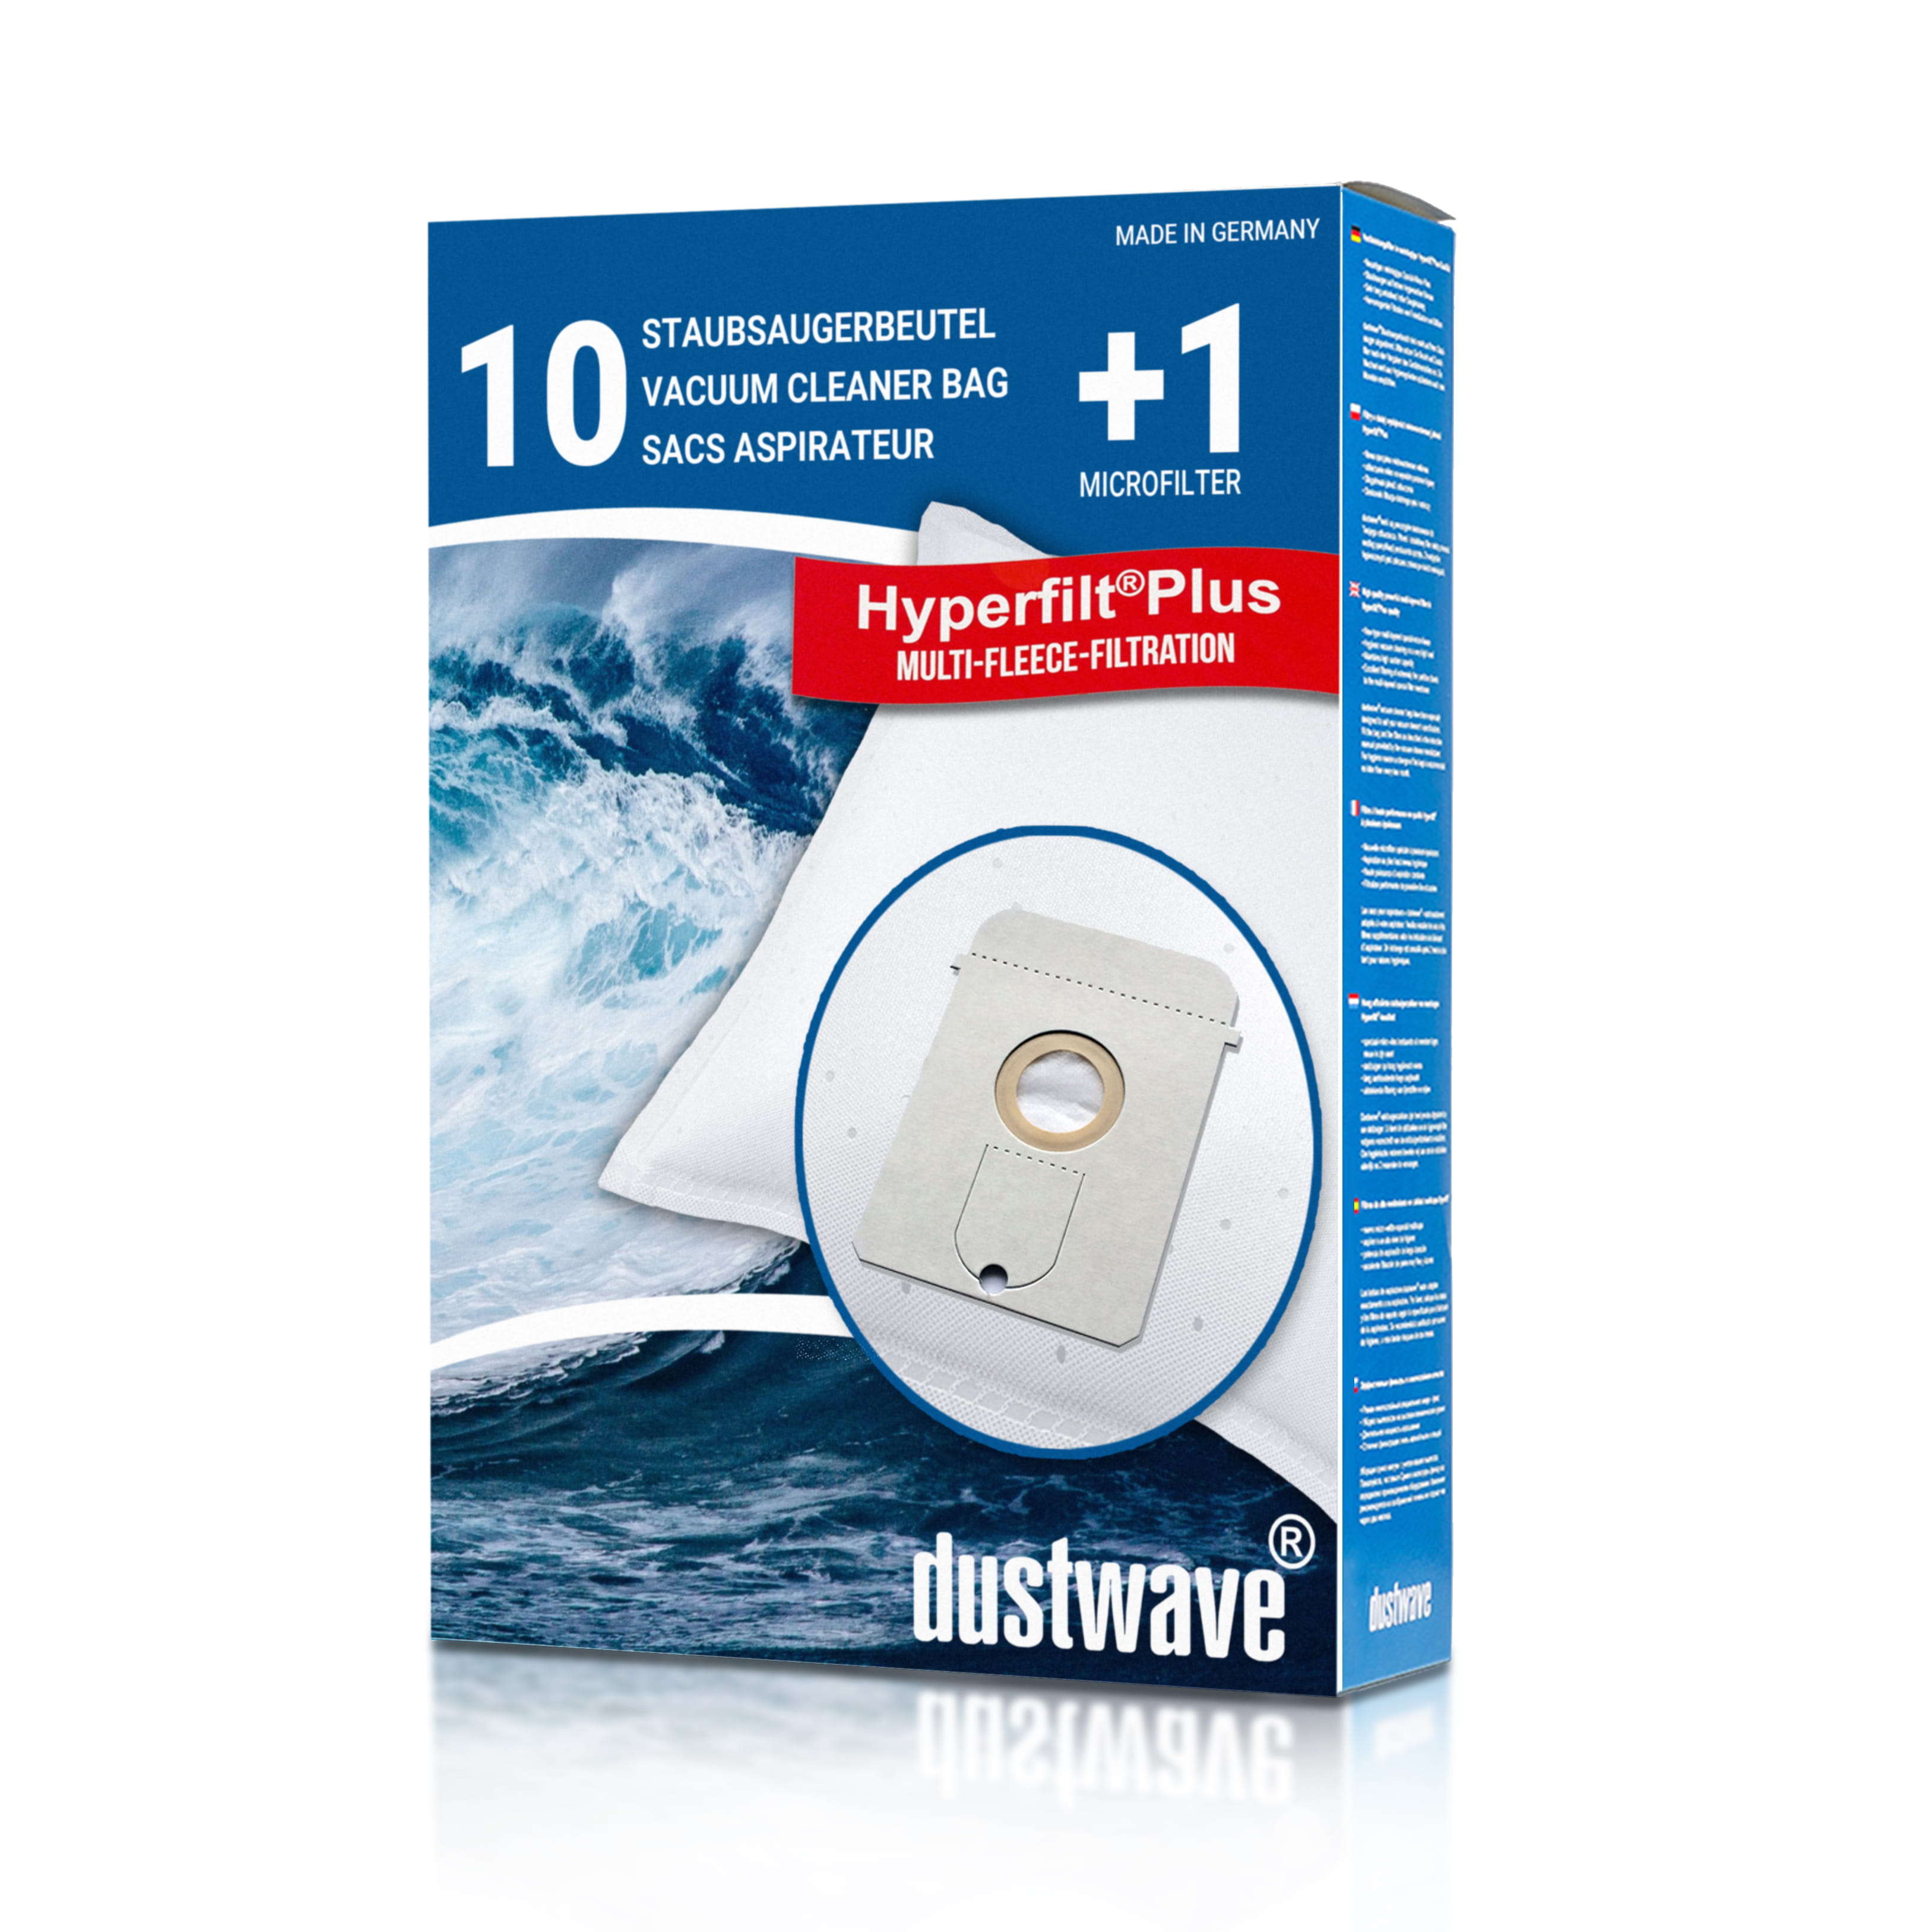 Dustwave® 10 Staubsaugerbeutel für AquaPur AE 800 - hocheffizient, mehrlagiges Mikrovlies mit Hygieneverschluss - Made in Germany